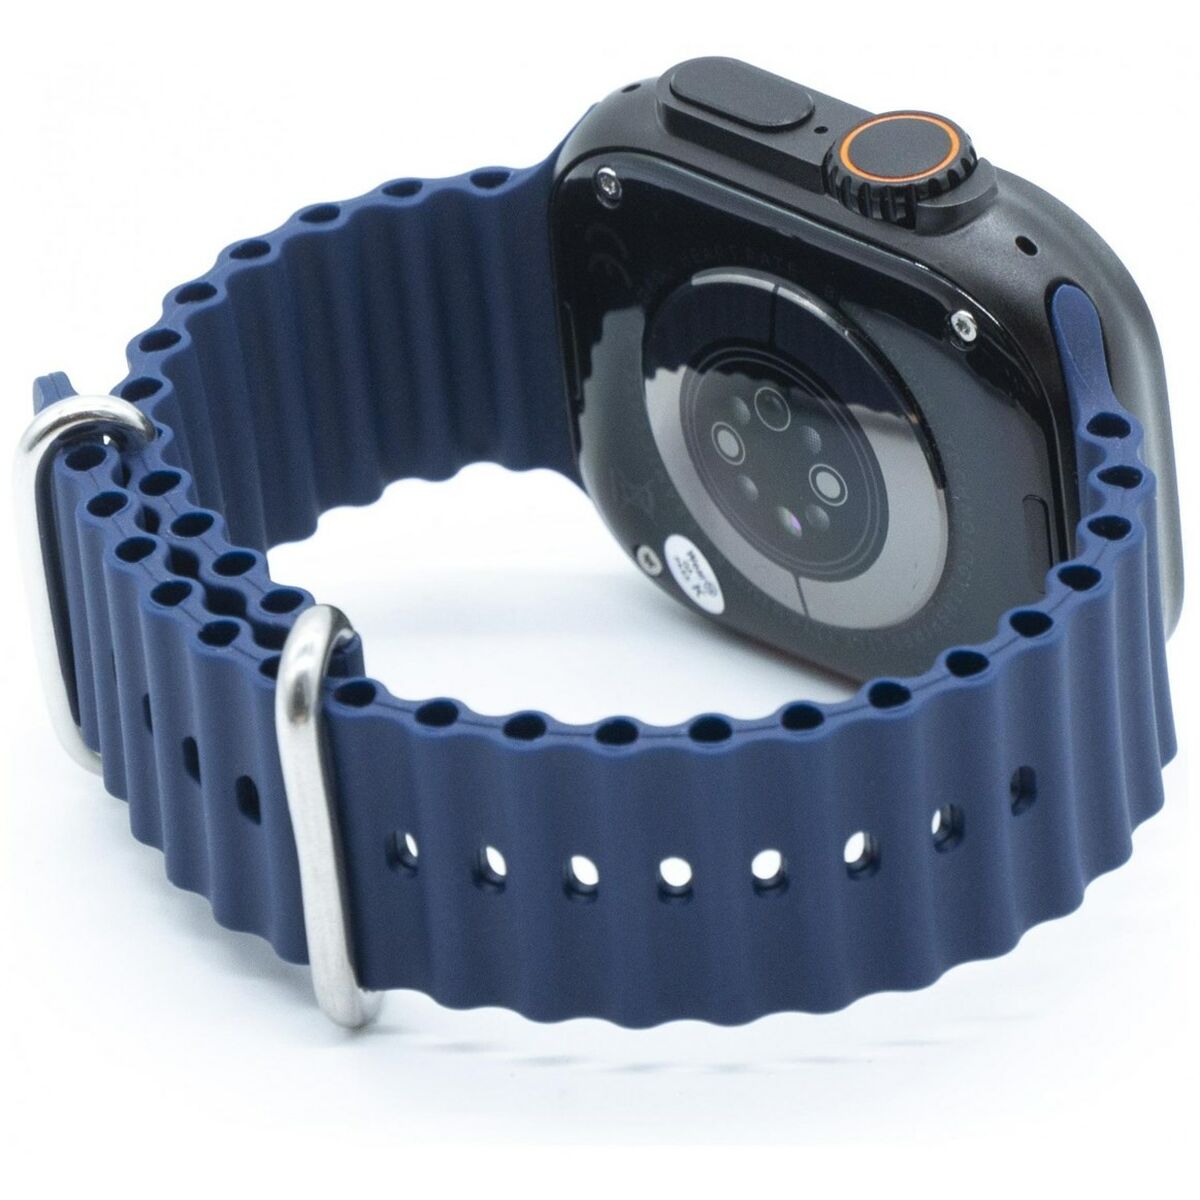 Smartwatch Kiano Solid Grijs Zwart Blauw